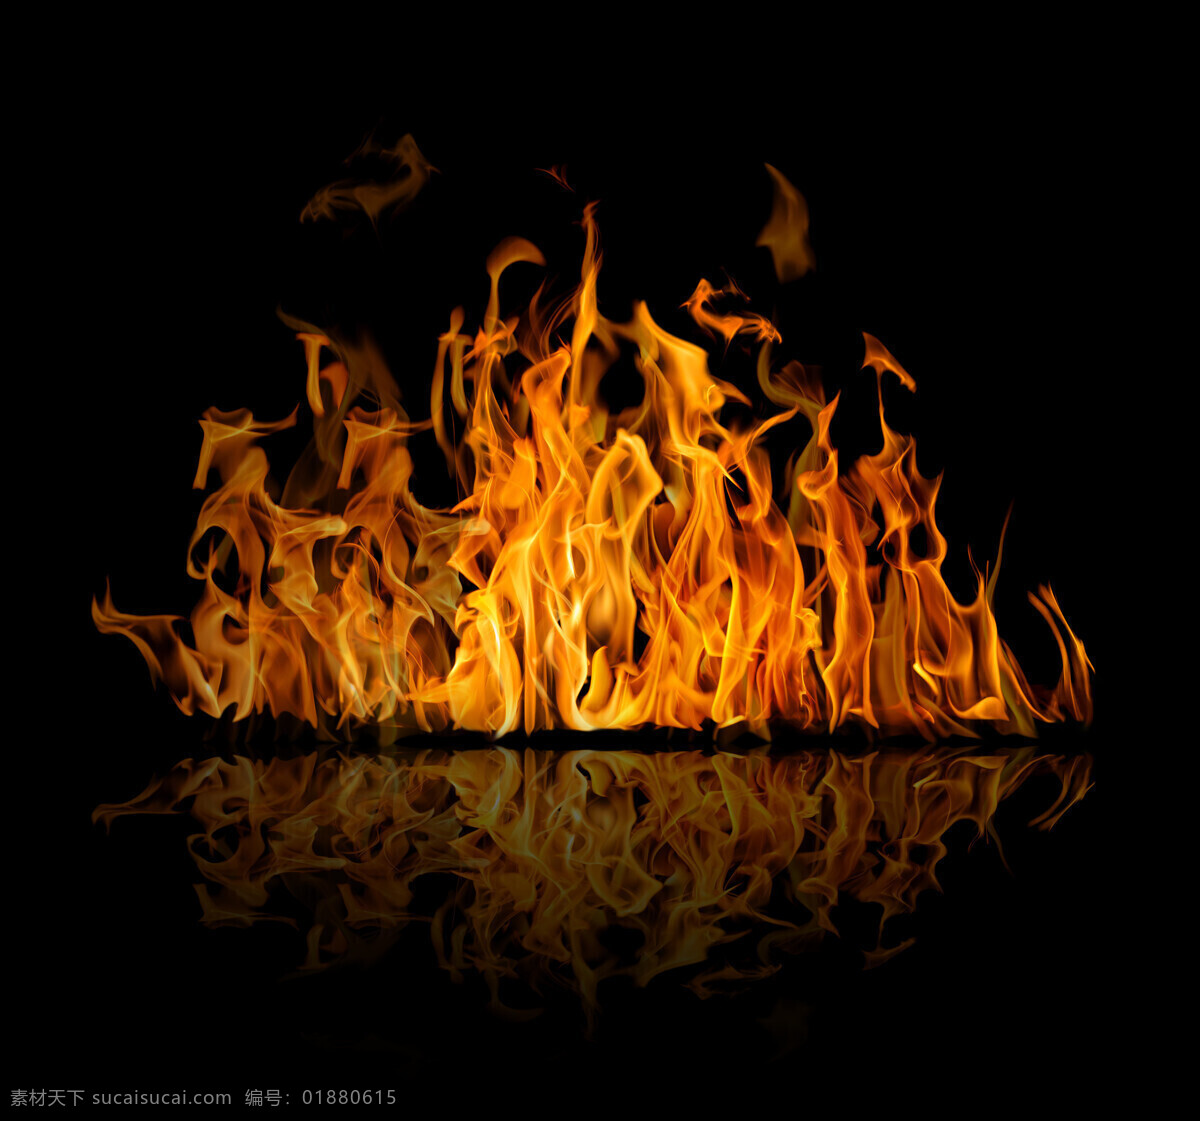 燃烧 烈焰 大火 火焰元素 燃烧的火焰 动感火焰 燃烧的烈焰 平面素材 火焰 火苗 火素材 生活百科 生活素材